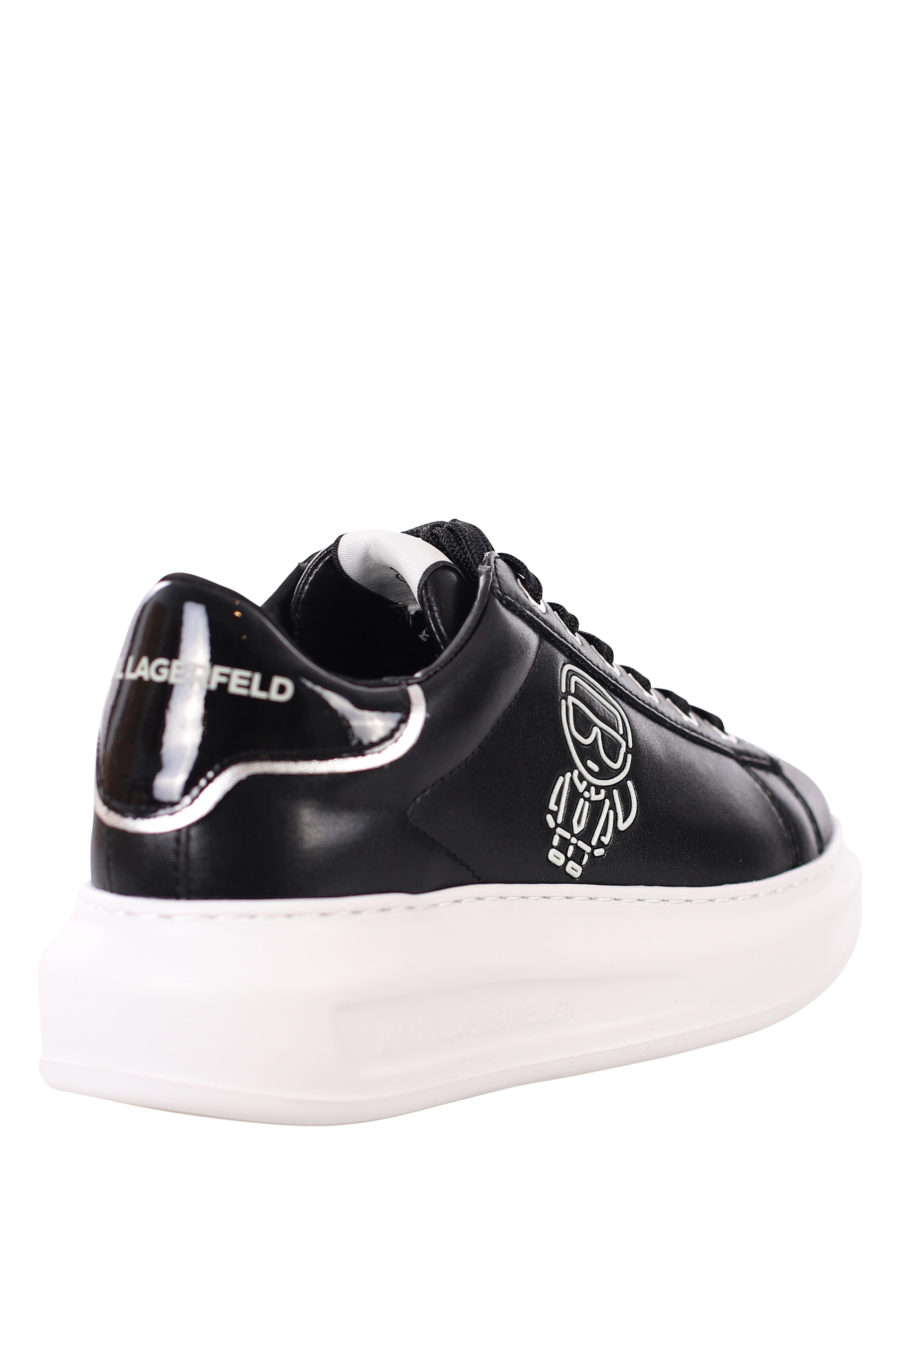 Zapatillas negras con logo en silueta blanco - IMG 0405